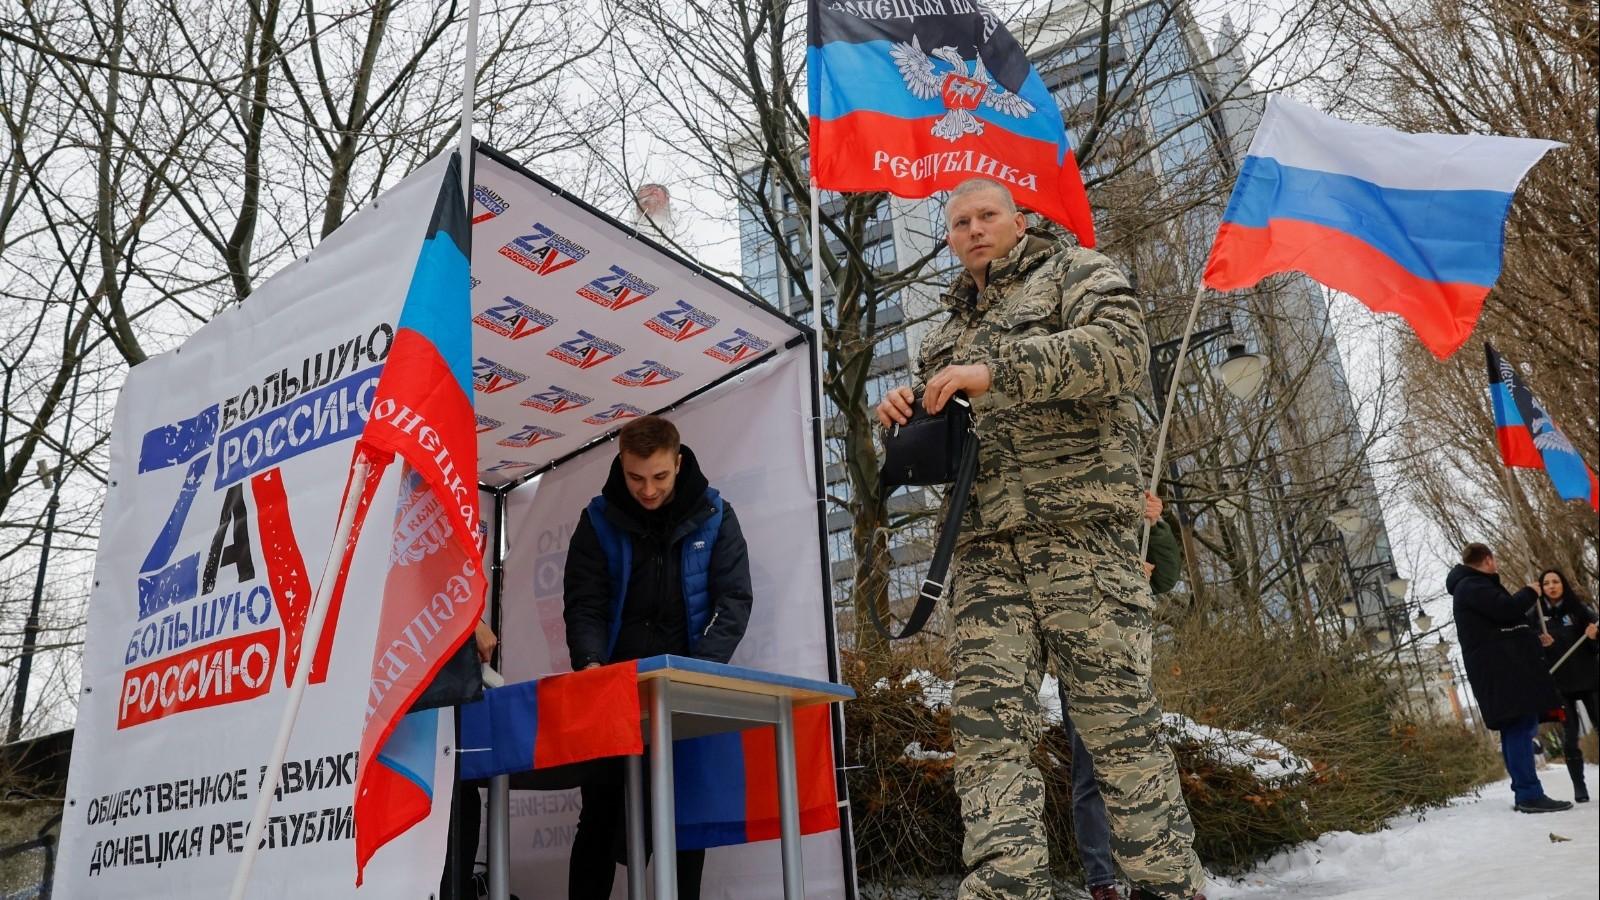 انطلاق التصويت المبكر للانتخابات الرئاسية الروسية